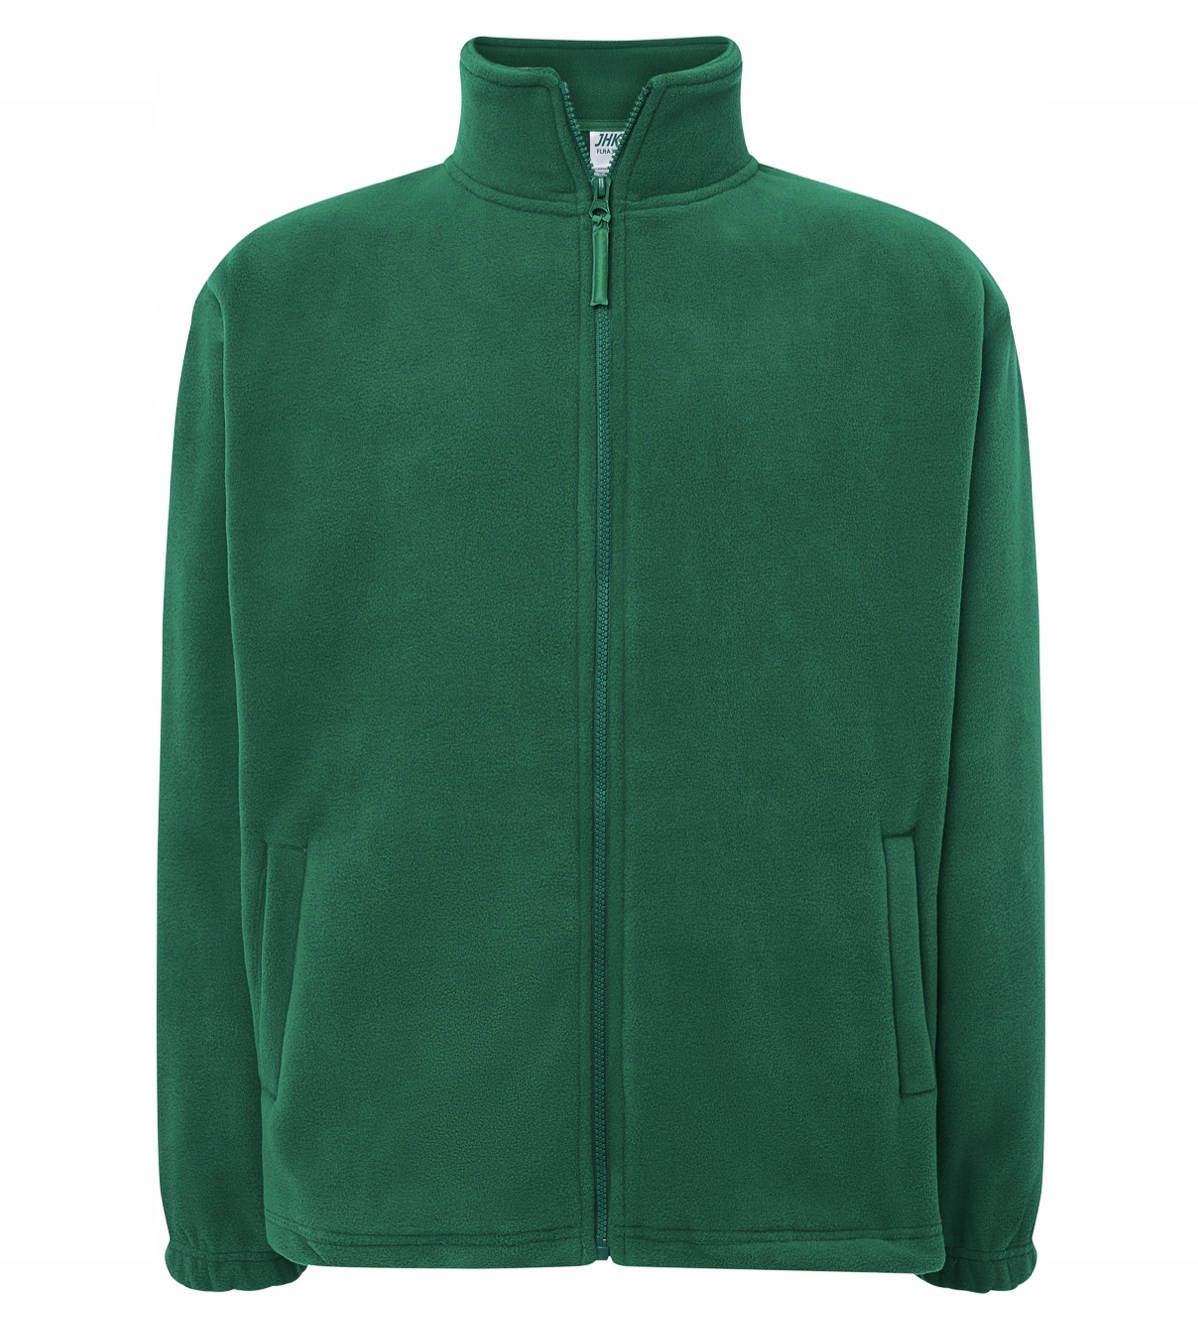 Pánsky fleece - zelený - denný / pracovný - XL